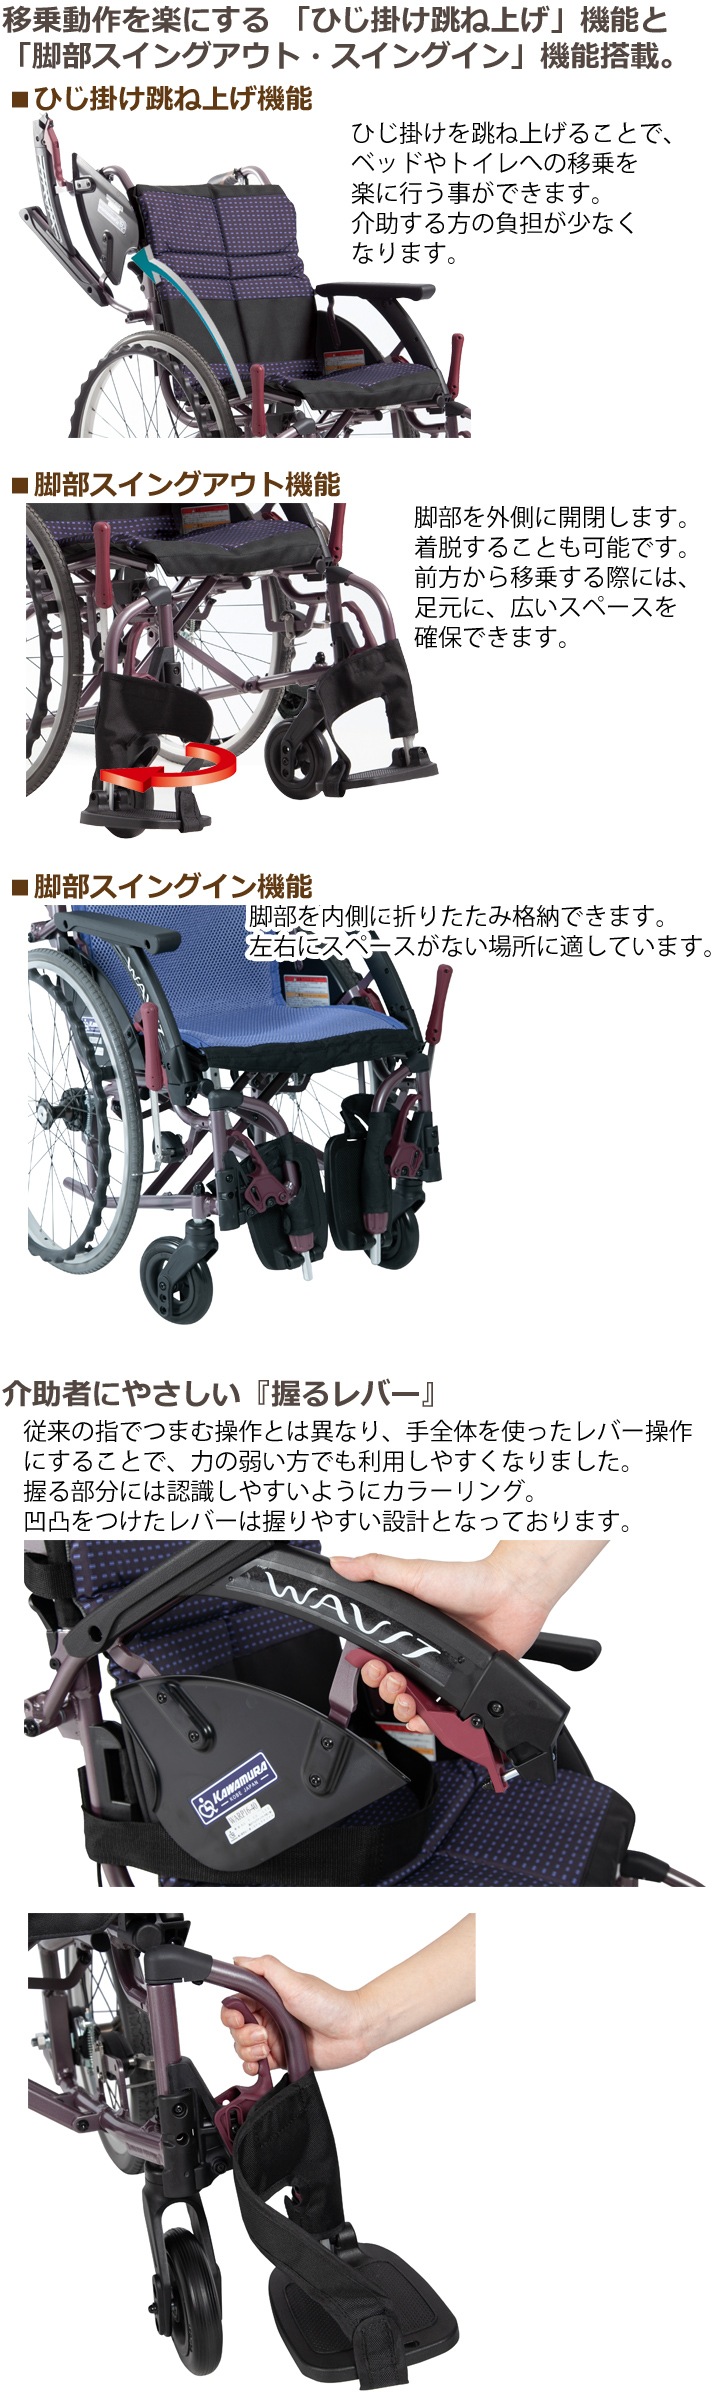 選ぶなら WAVITRoo 車椅子 車いす 車イス ハイポリマー ノーパンク 介助 移動 介護 病院 施設 WAR 標準タイプ 座幅45cm 